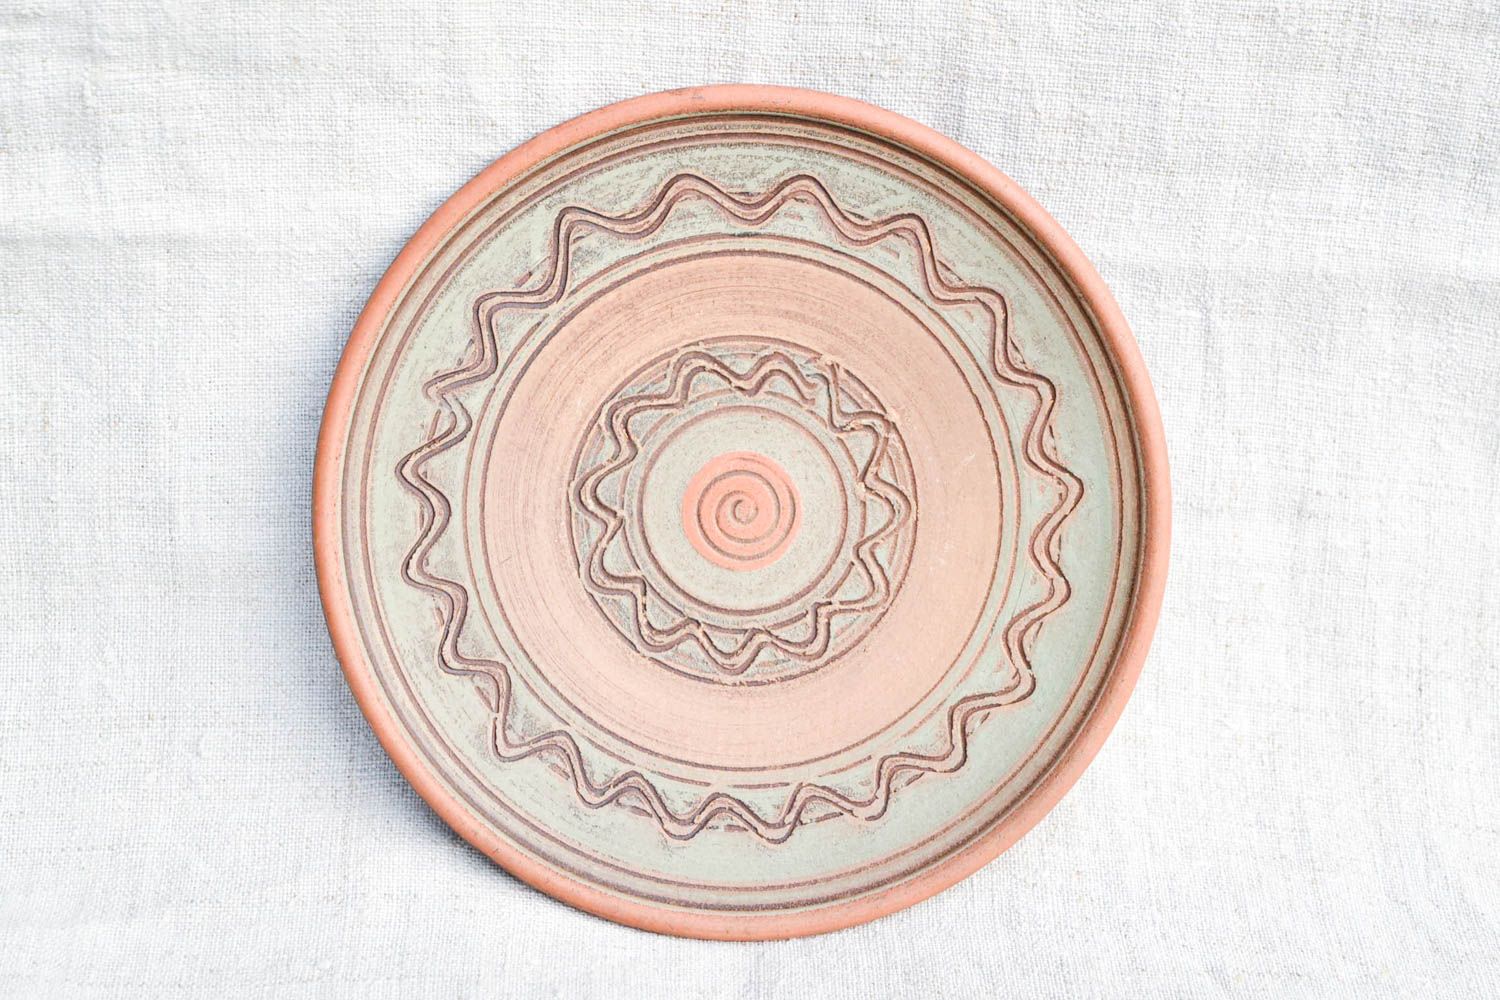 Расписная тарелка хенд мейд глиняная посуда керамическая тарелка эко стиль фото 3